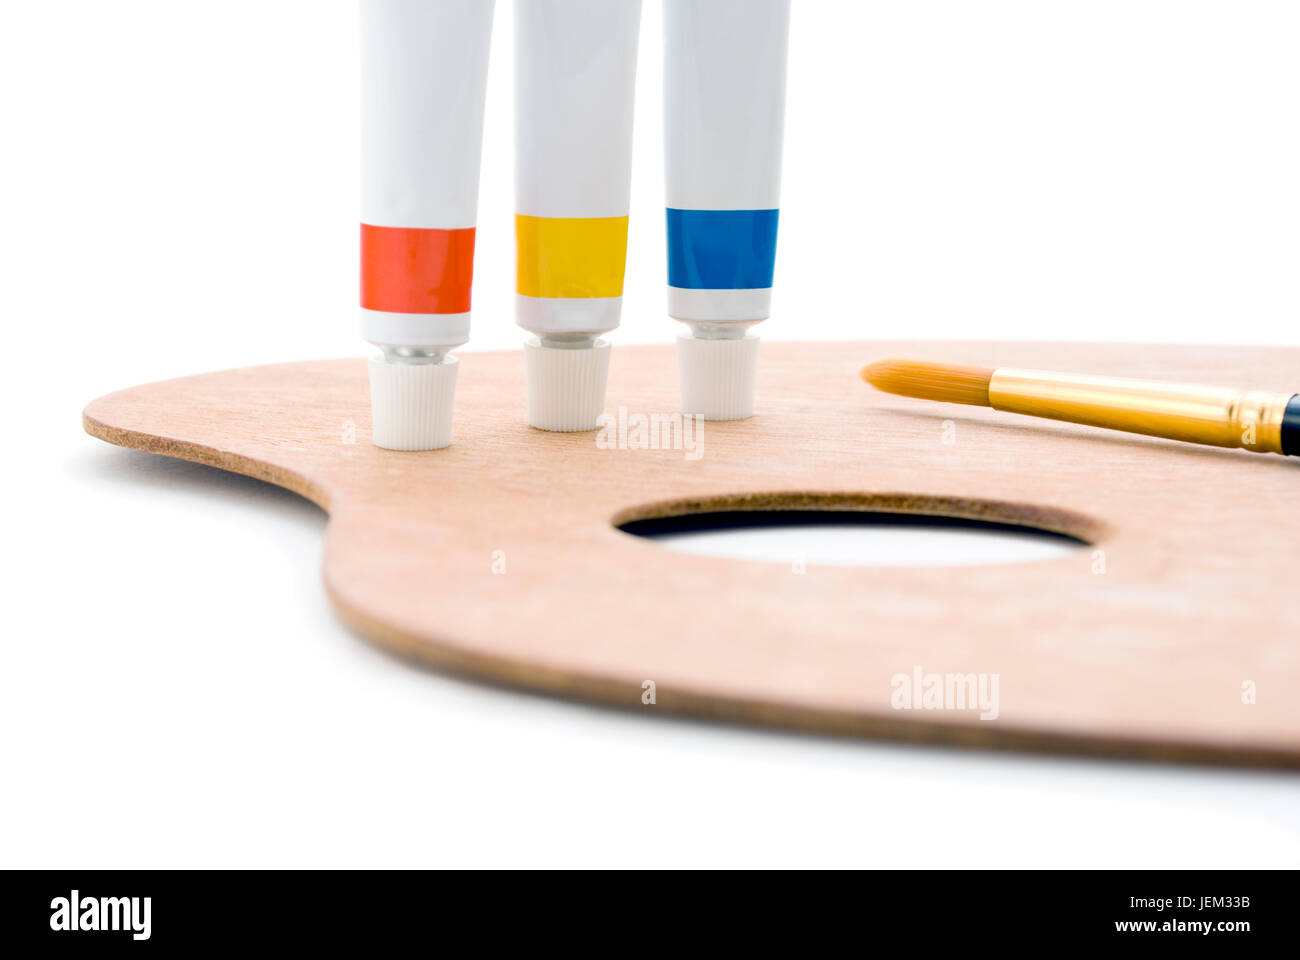 Trois tubes de peinture (couleurs primaires) debout sur le bord de la palette en bois avec trou de pouce et la pointe de pinceau visible. Libre shot, recadré à huis clos Banque D'Images